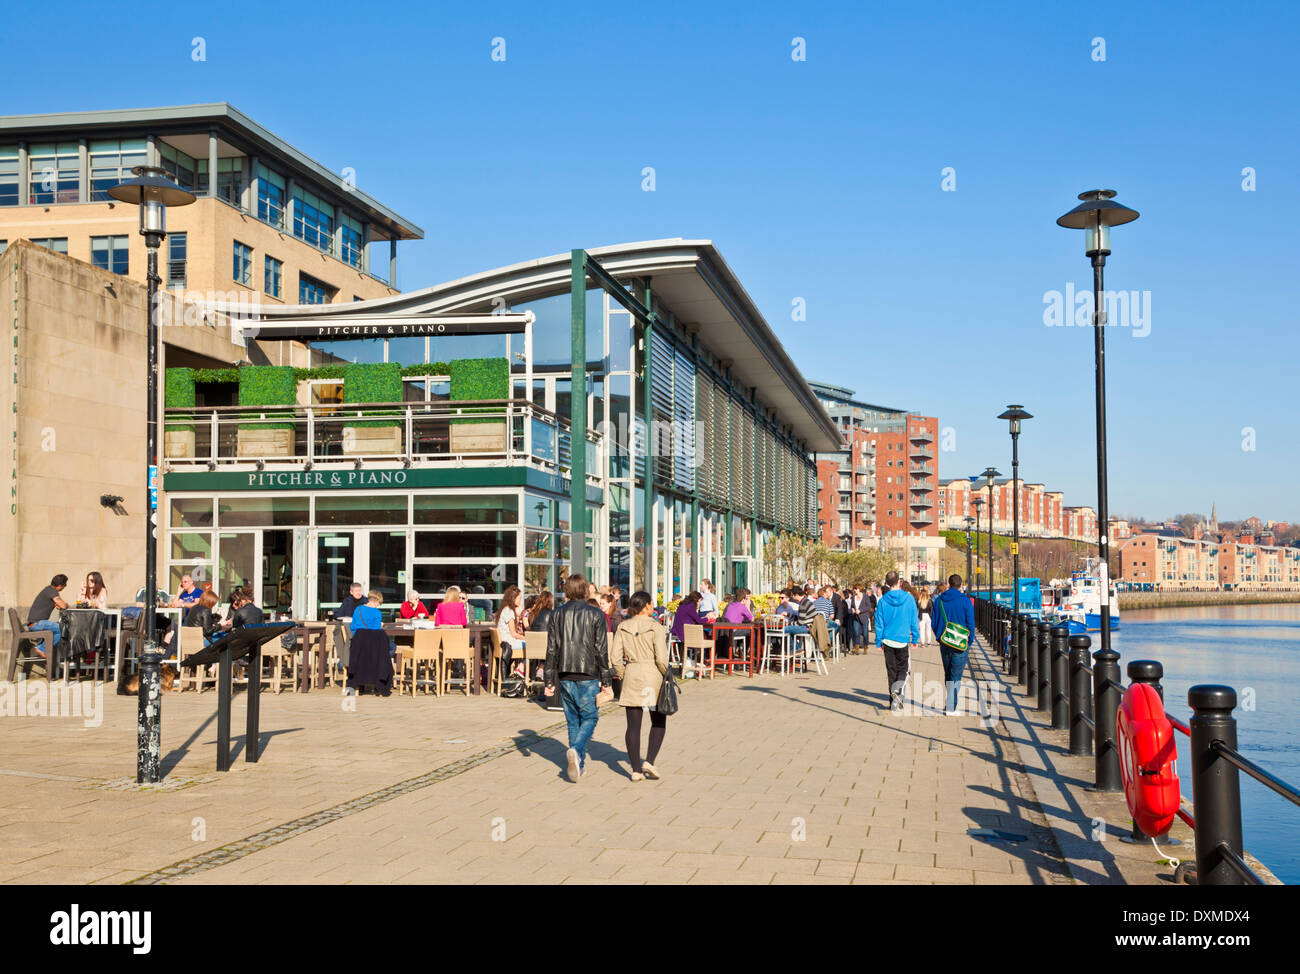 Le lanceur et un piano-bar et restaurant sur le quai de Newcastle upon Tyne Tyne et Wear Tyneside, Angleterre Royaume-uni GB EU Europe Banque D'Images